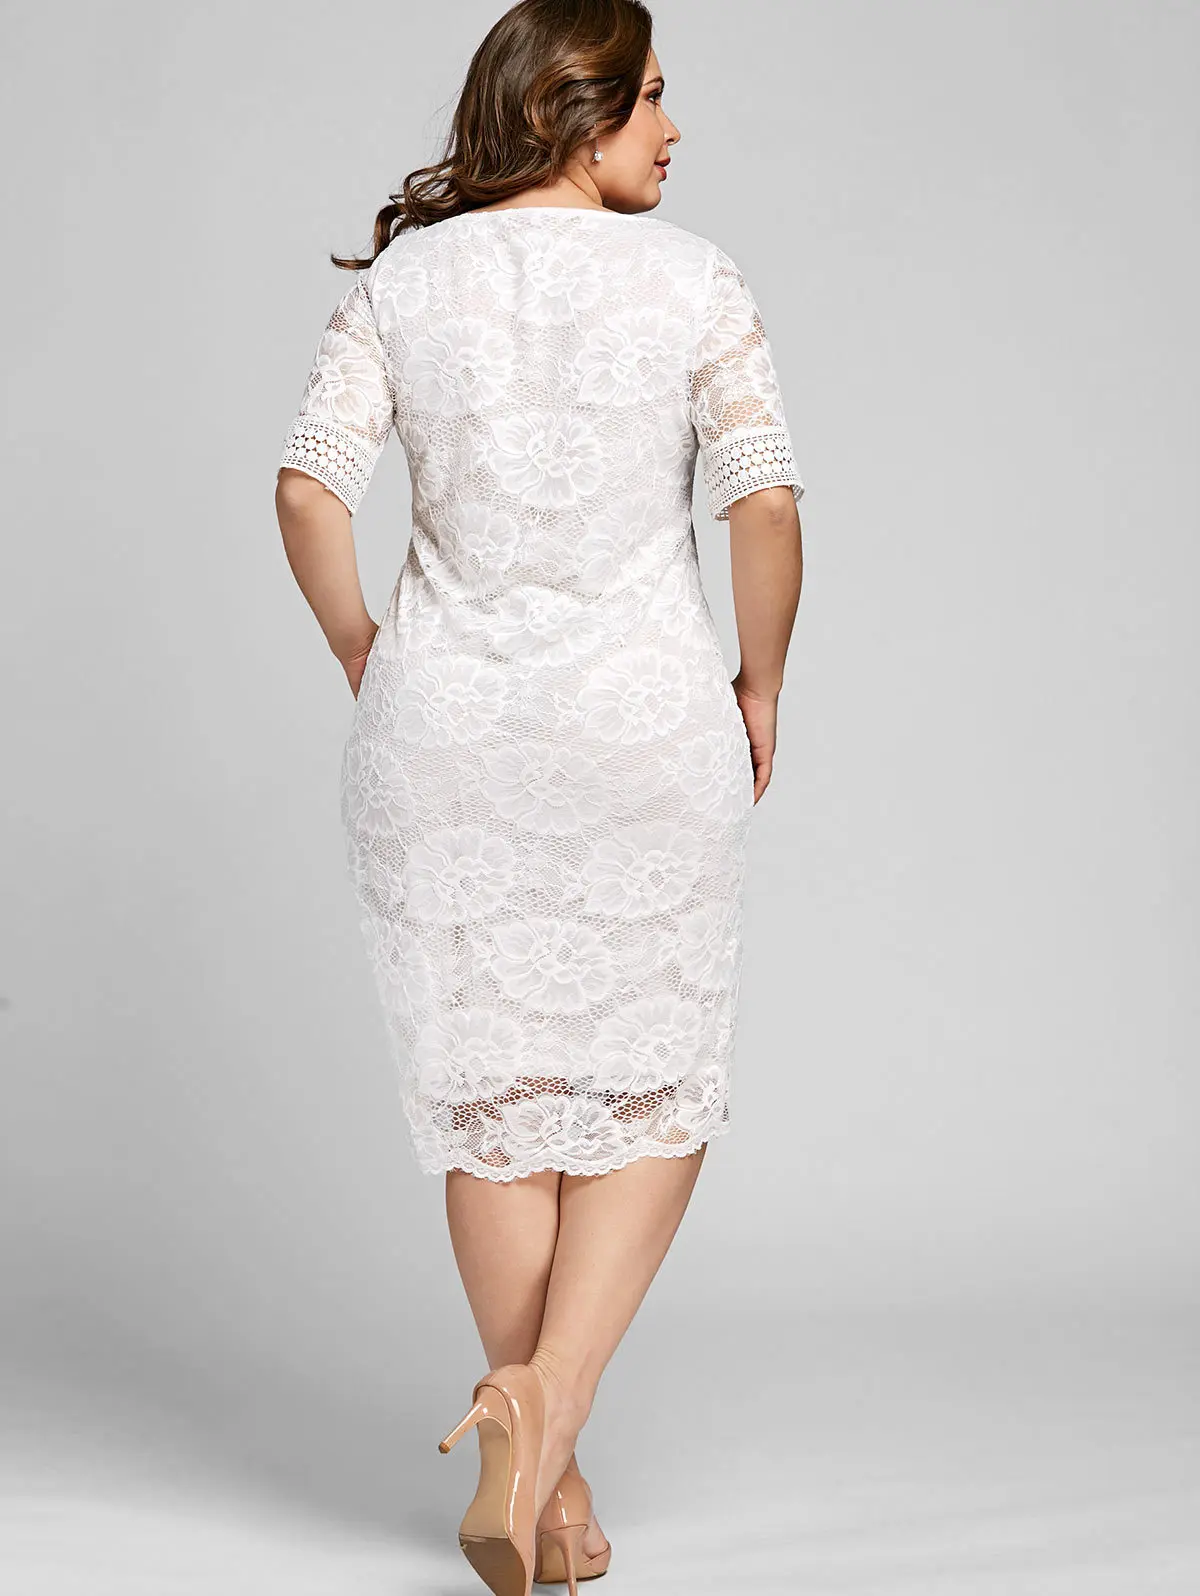 XL-5XL осень плюс размер кружевное платье выдалбливают женские элегантные V шеи офисное облегающее платье женский сексуальный большой размер вечерние платья